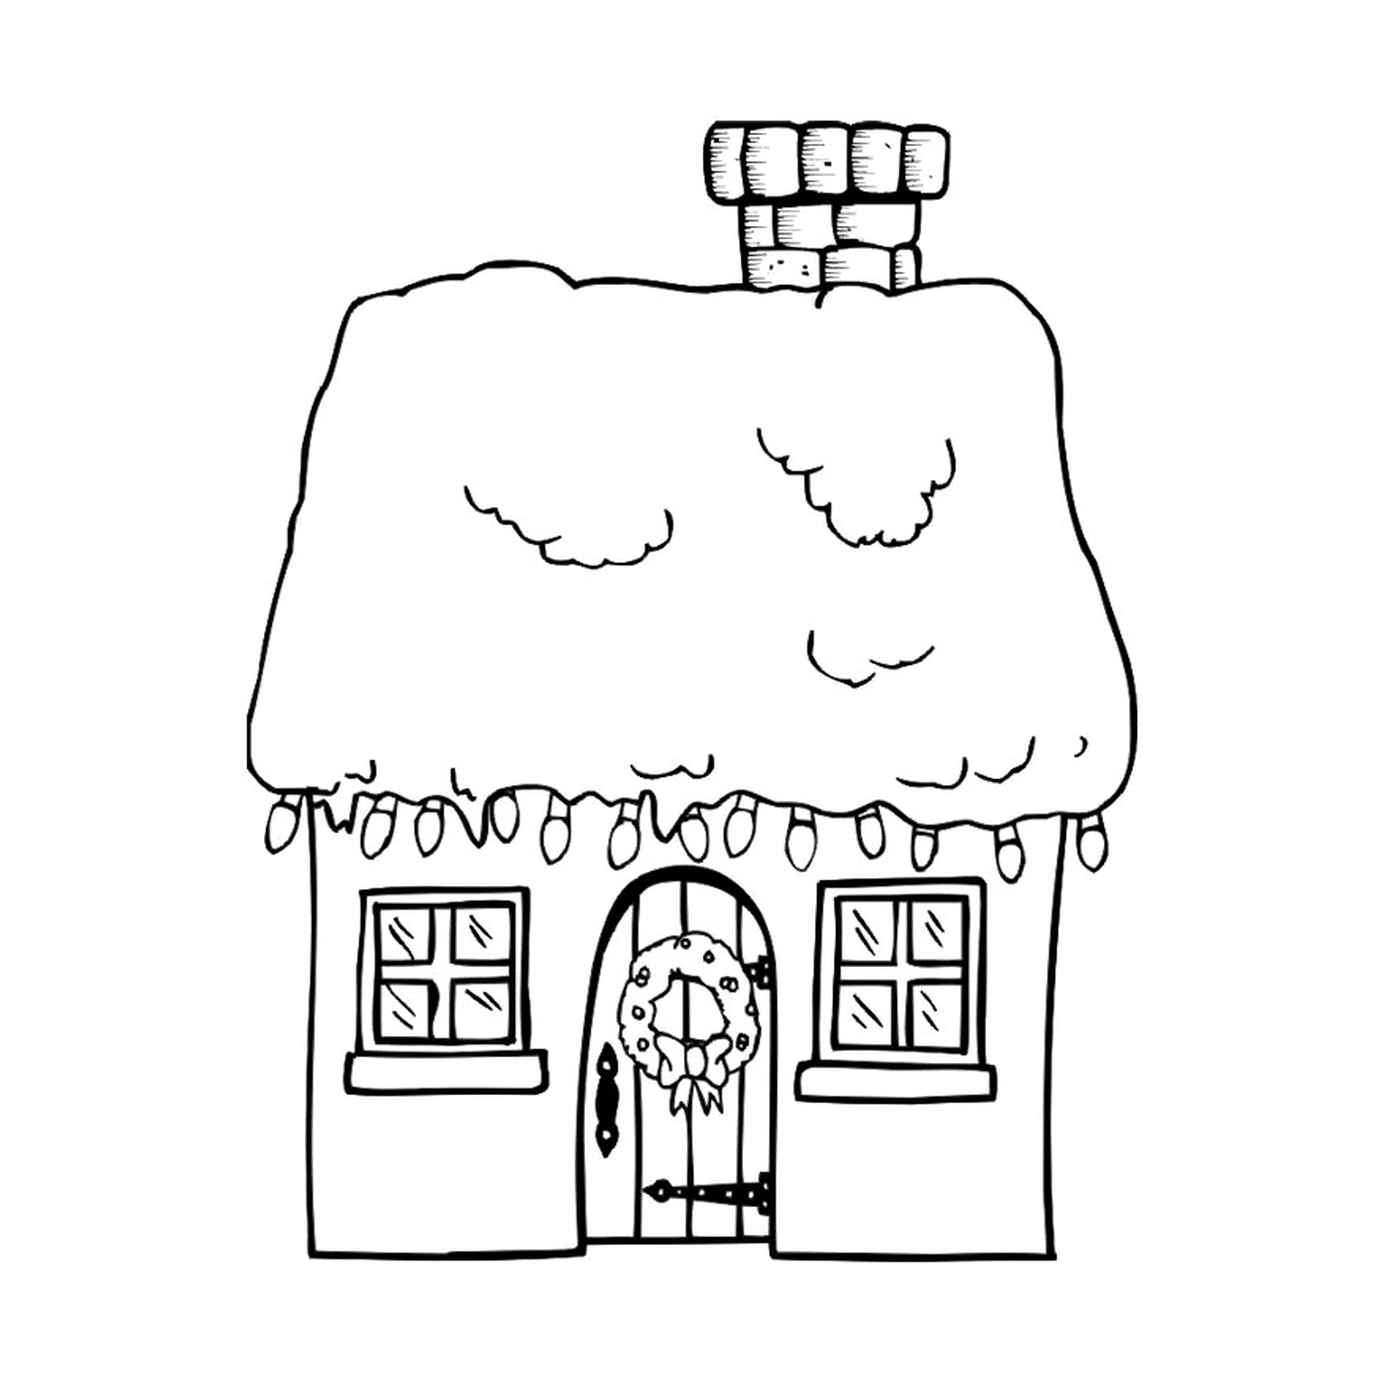  गर्म सर्दियों के घर 